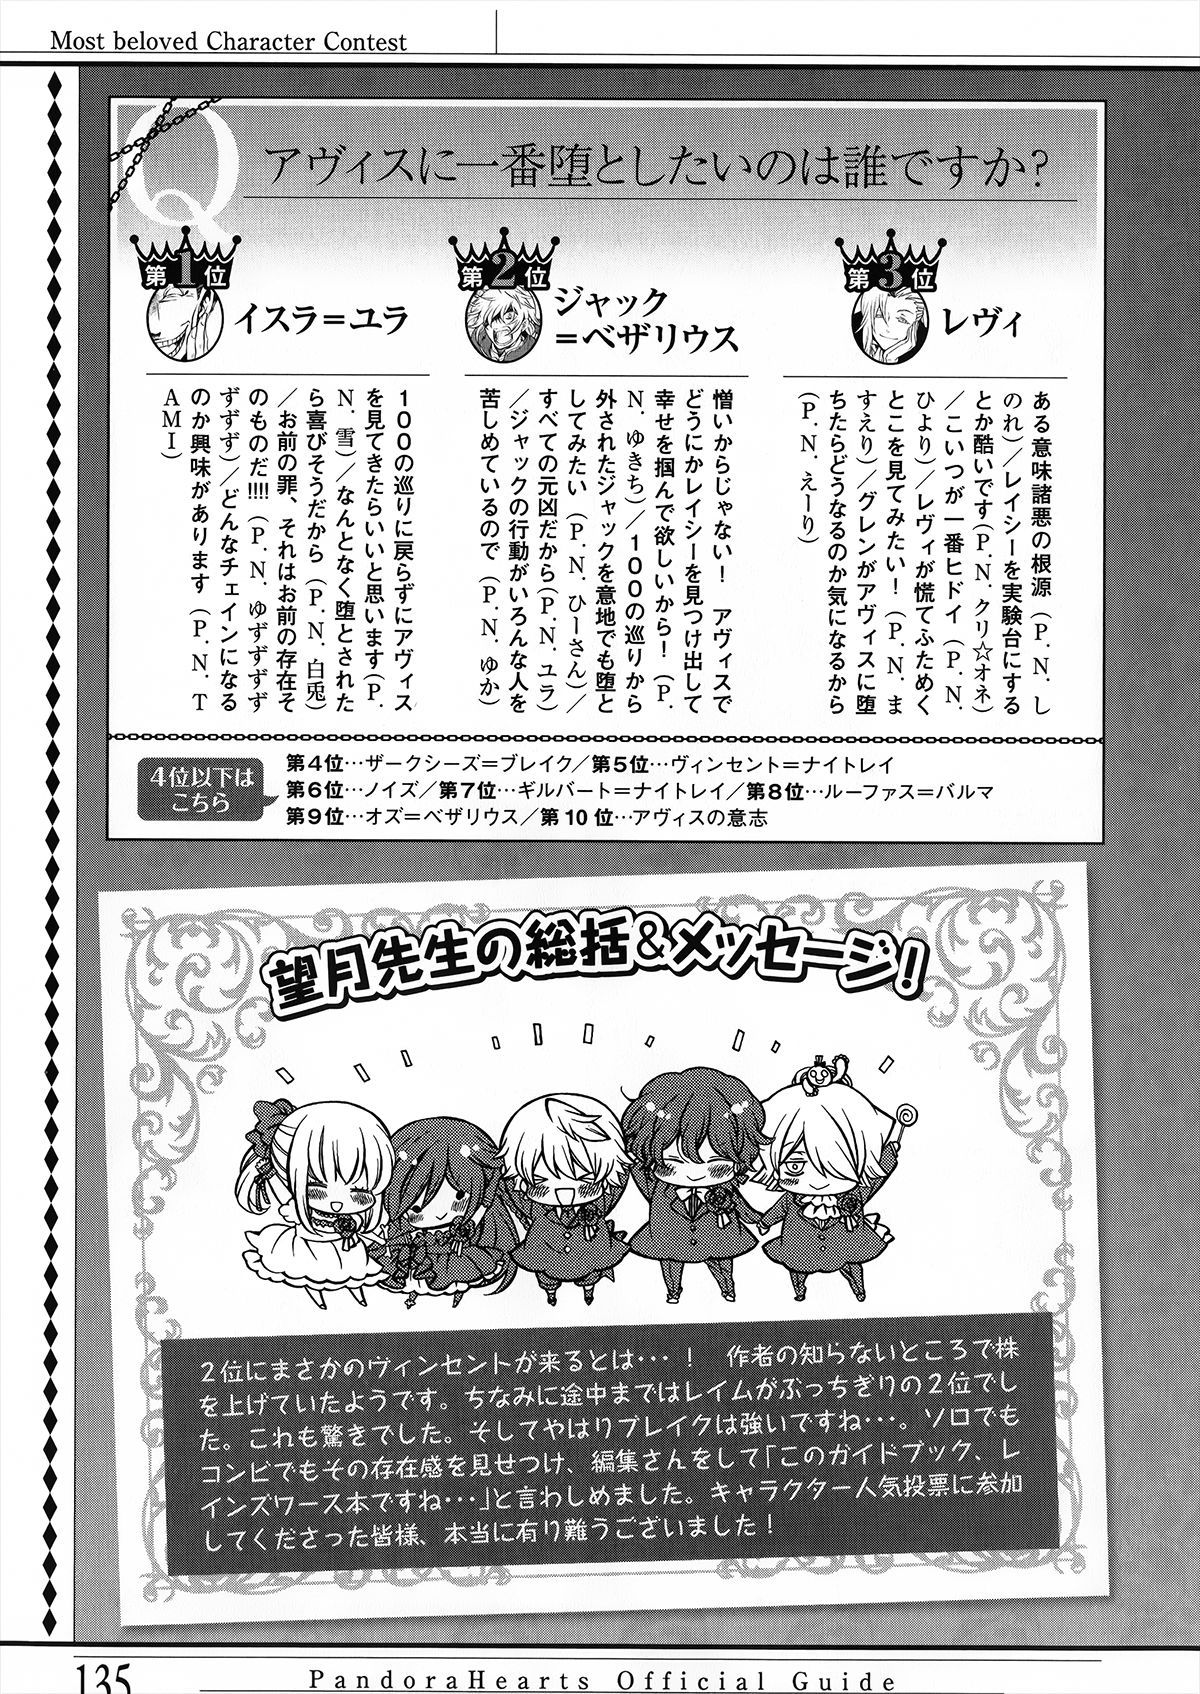 Pandora Hearts Guidebook 24+1: Last Dance パンドラハーツ オフィシャルガイド 24 + 1 ~Last Dance! 139